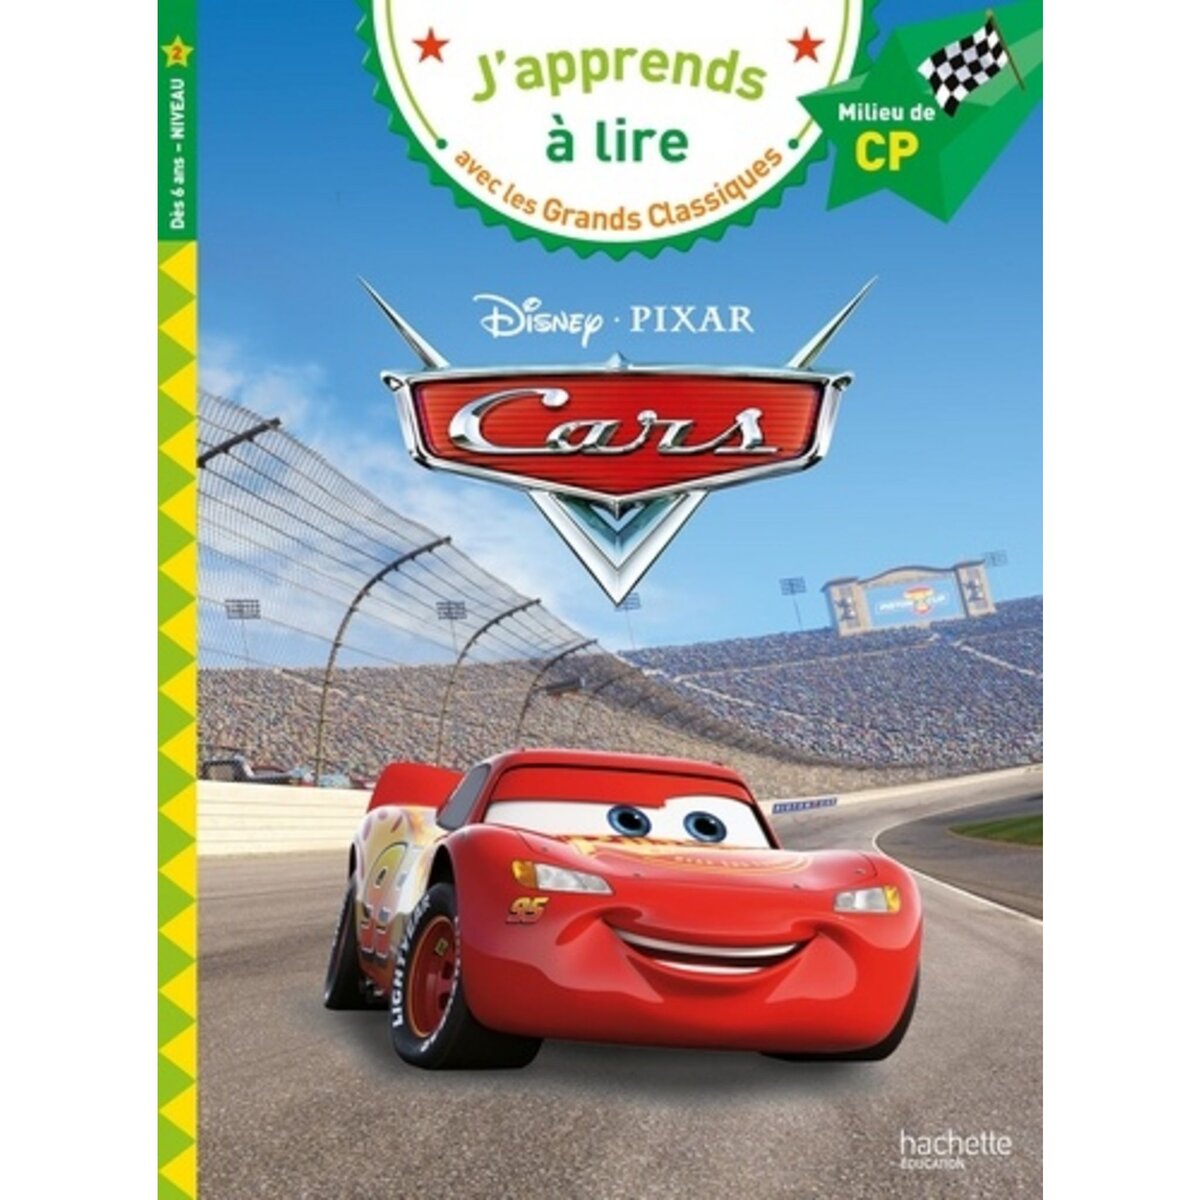  CARS. MILIEU DE CP NIVEAU 2, Disney Pixar